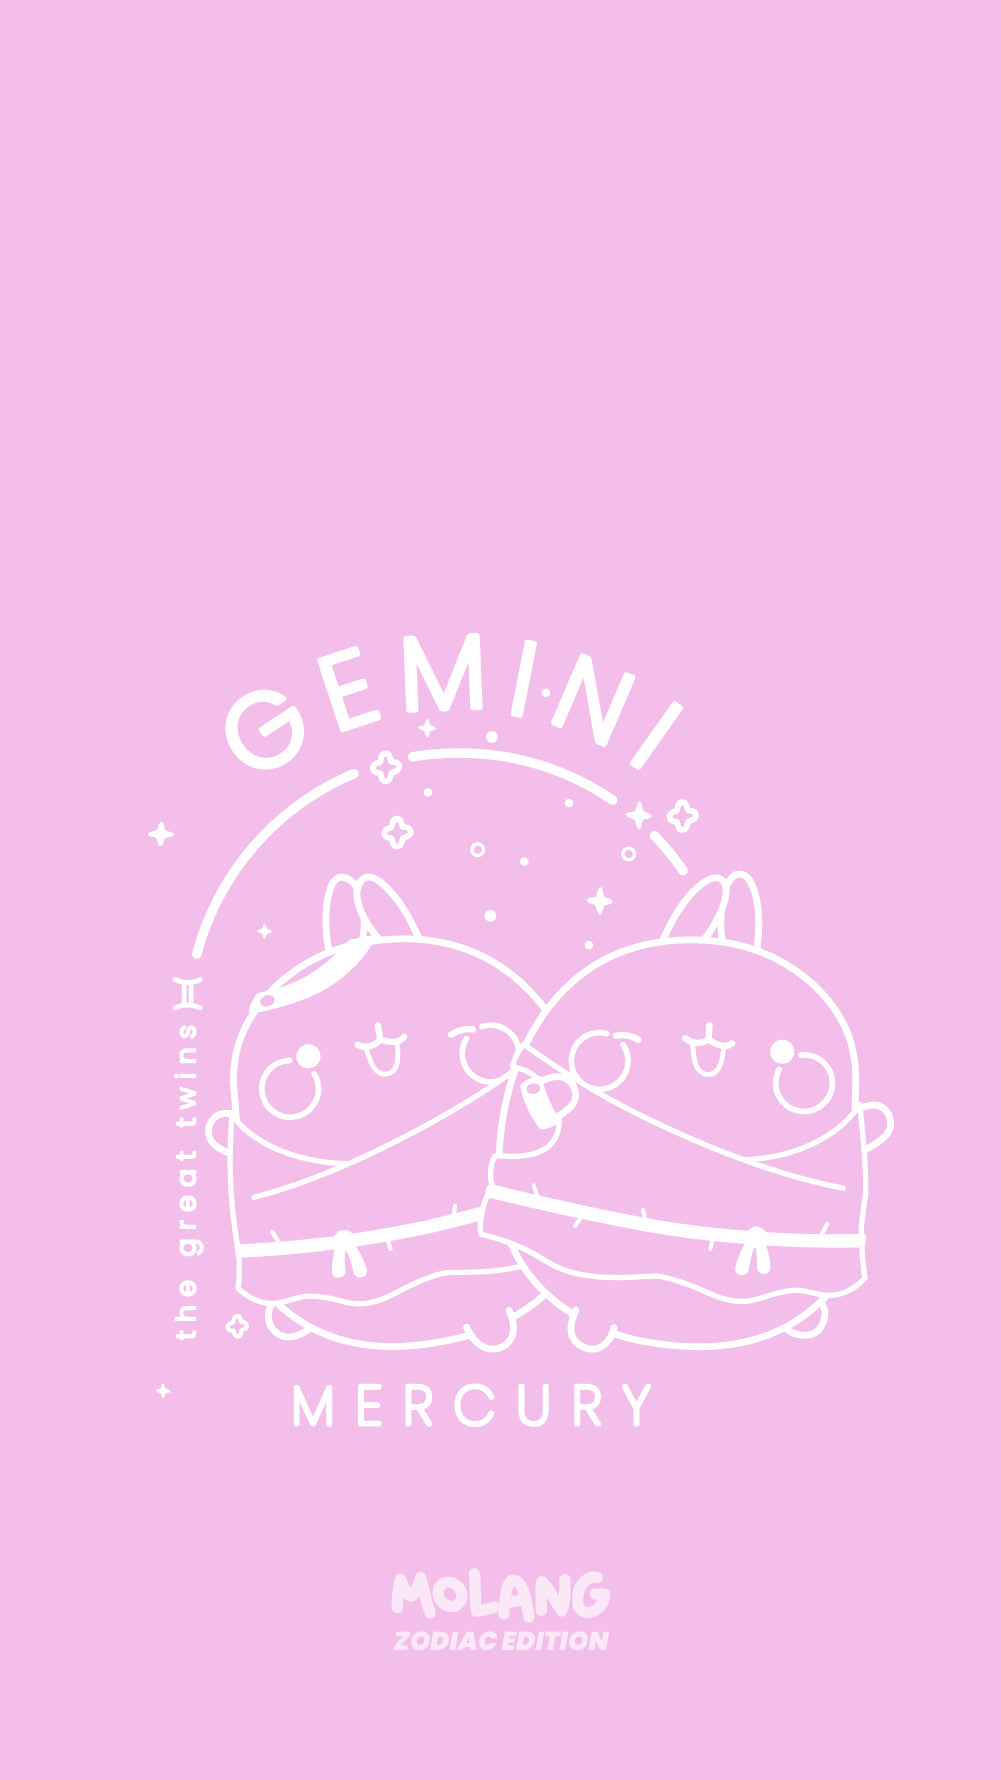 Gemini Cute Wallpapers  Top Free Gemini Cute Backgrounds  WallpaperAccess